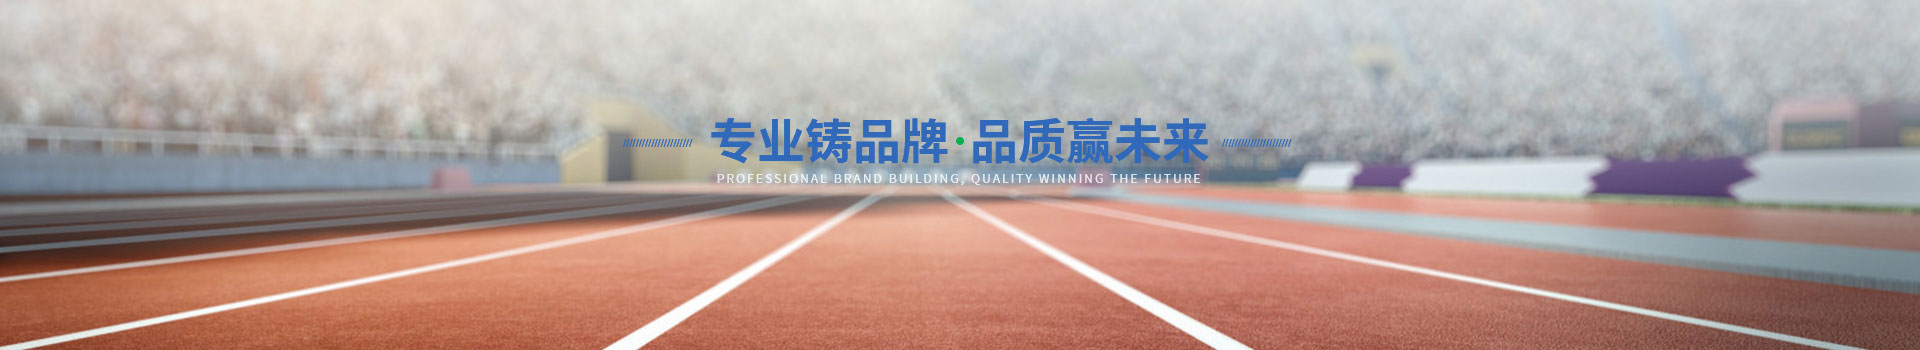 广东中山南方体育设施工程有限公司